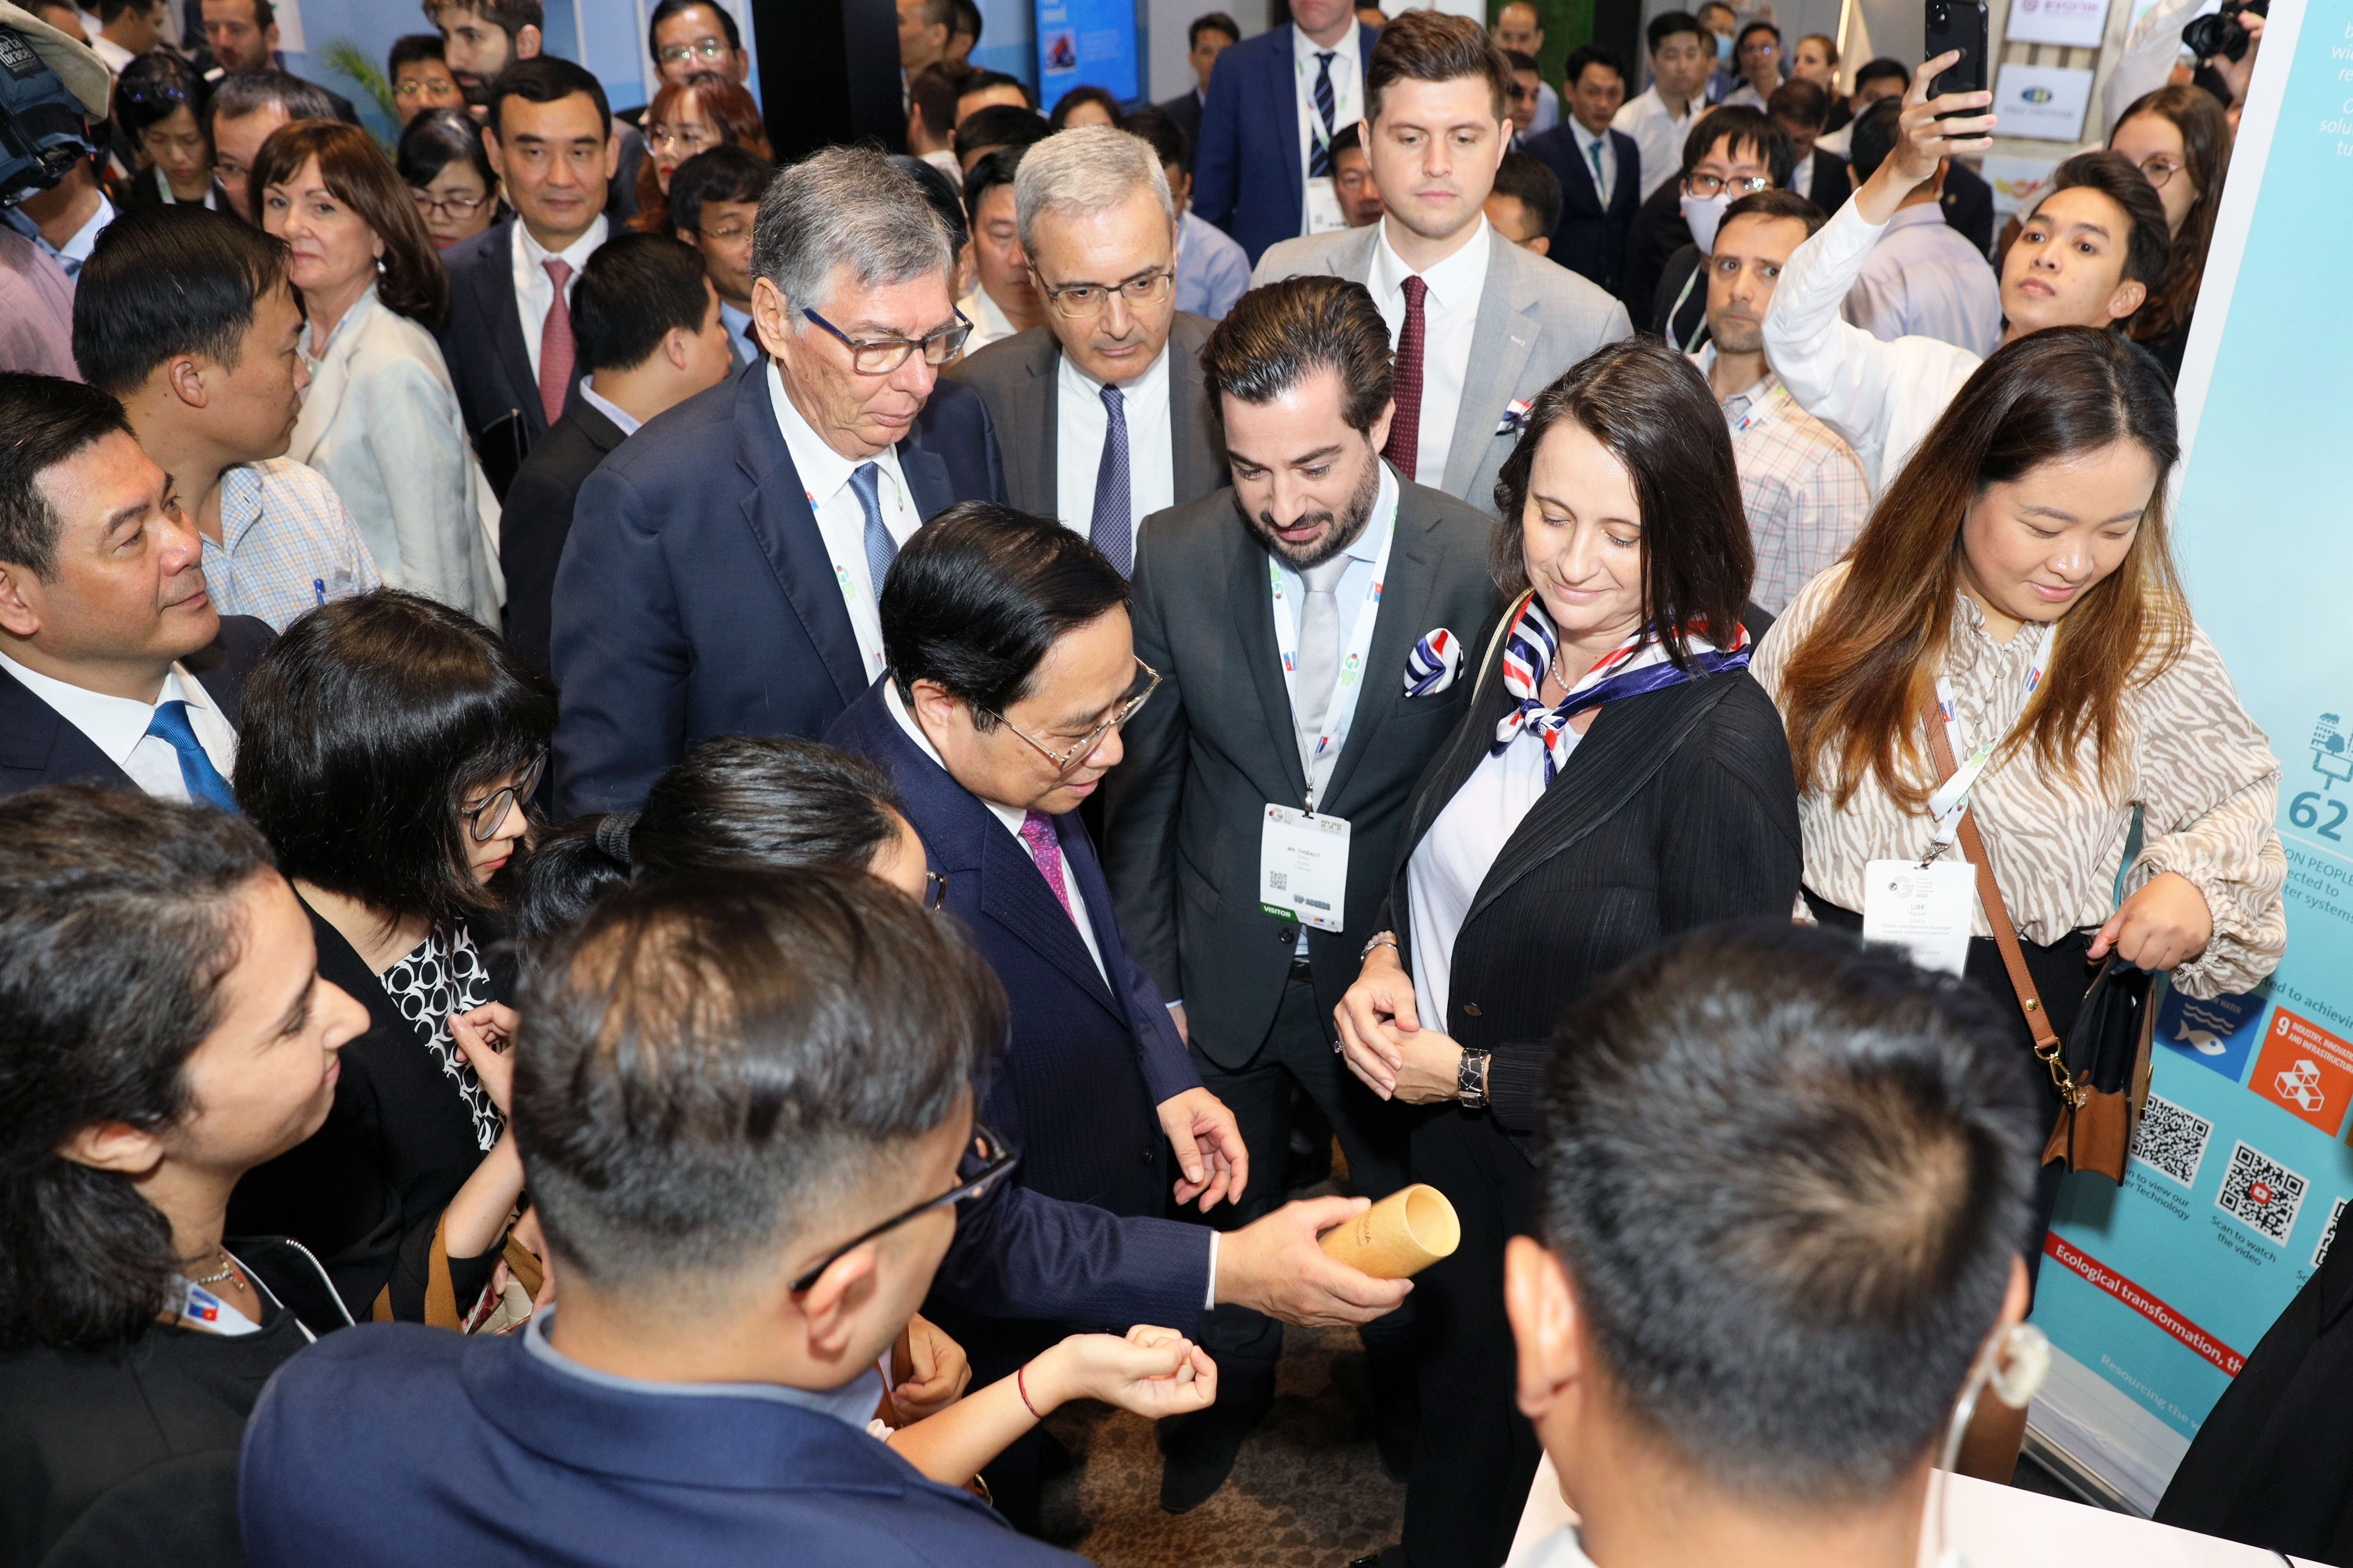  Các doanh nghiệp Pháp đã có dịp chào đón Thủ tướng Phạm Minh Chính và bày tỏ sự quan tâm cùng đồng hành với Việt Nam phát triển kinh xanh hiện thực hóa các cam kết tại Hội nghị COP26, đặc biệt là mục tiêu đạt mức phát thải ròng bằng 0 (Net Zero carbon ) vào năm 2050.  